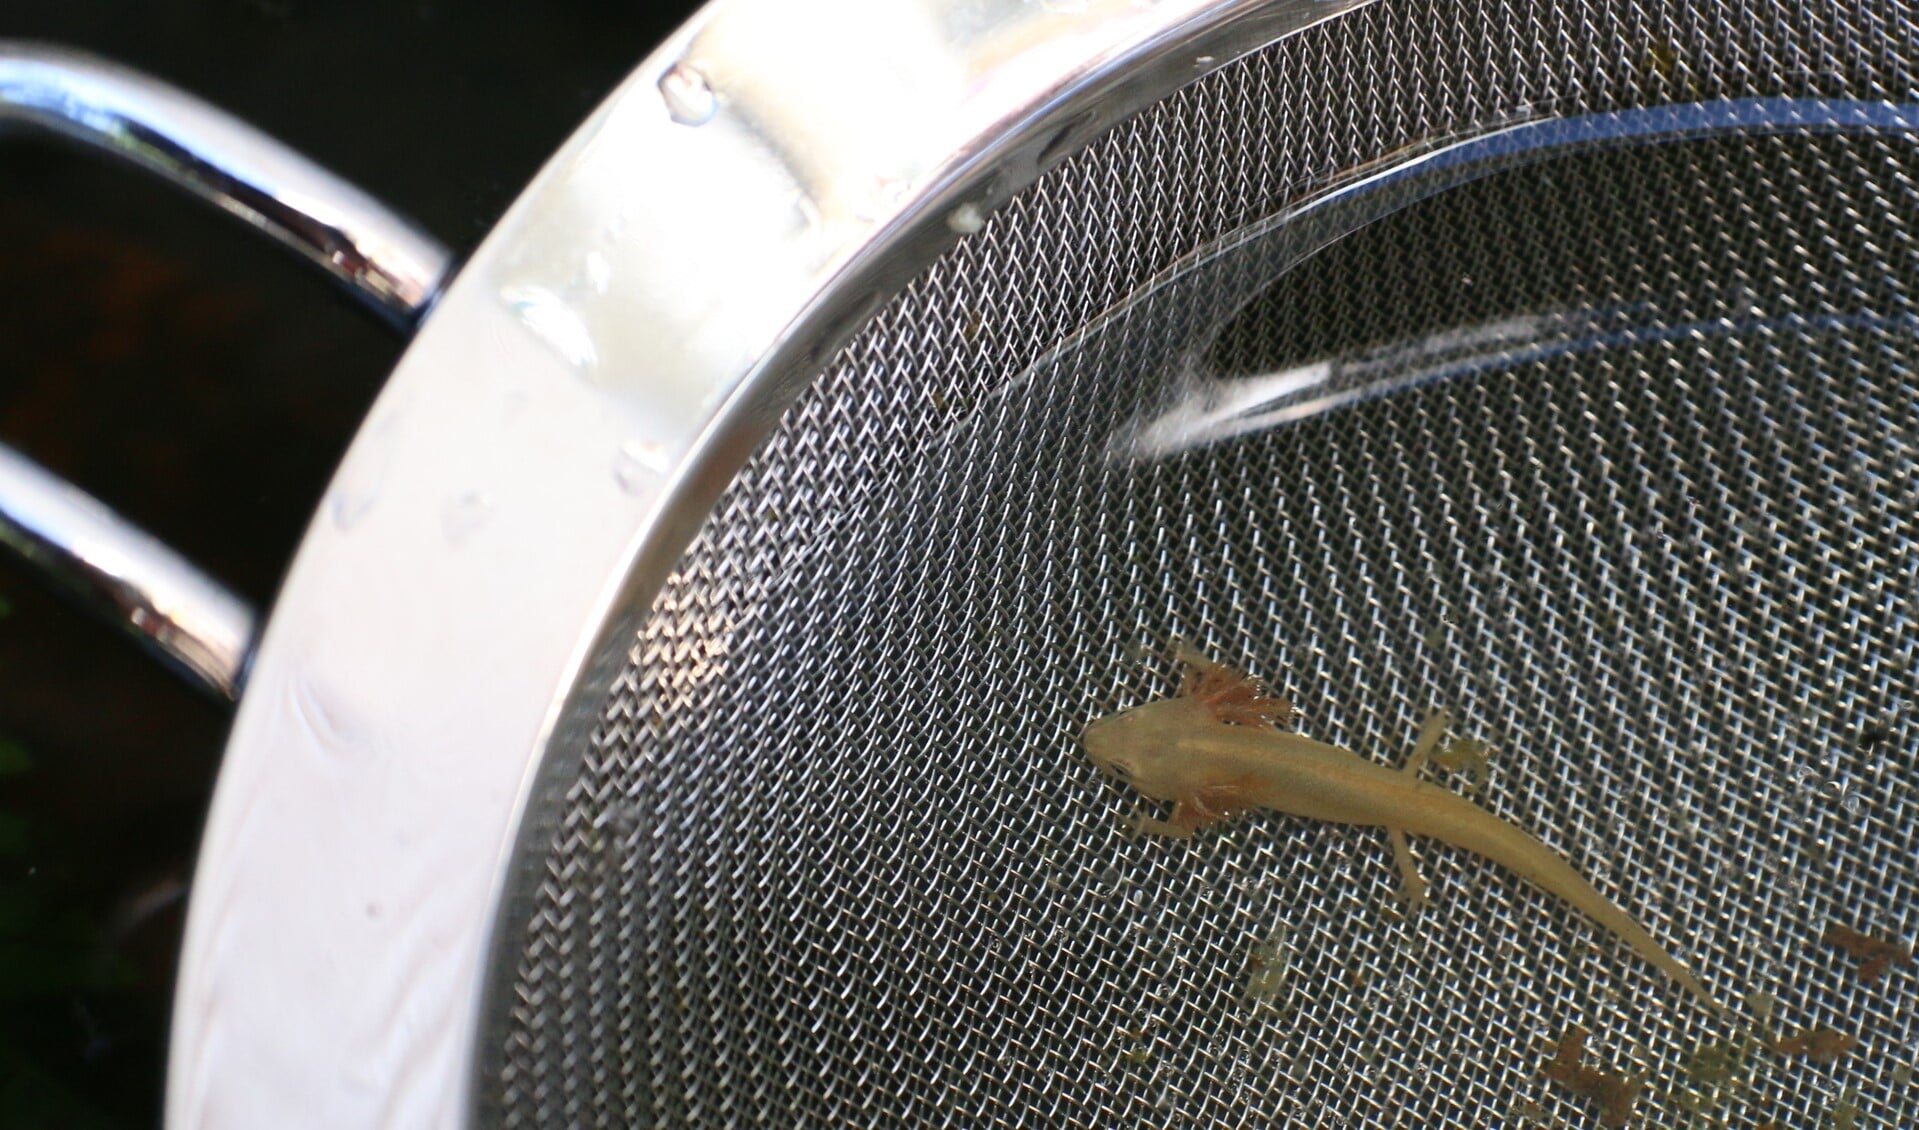 Flavistische larve van kleine watersalamander. (foto: Caroline Elfferich)